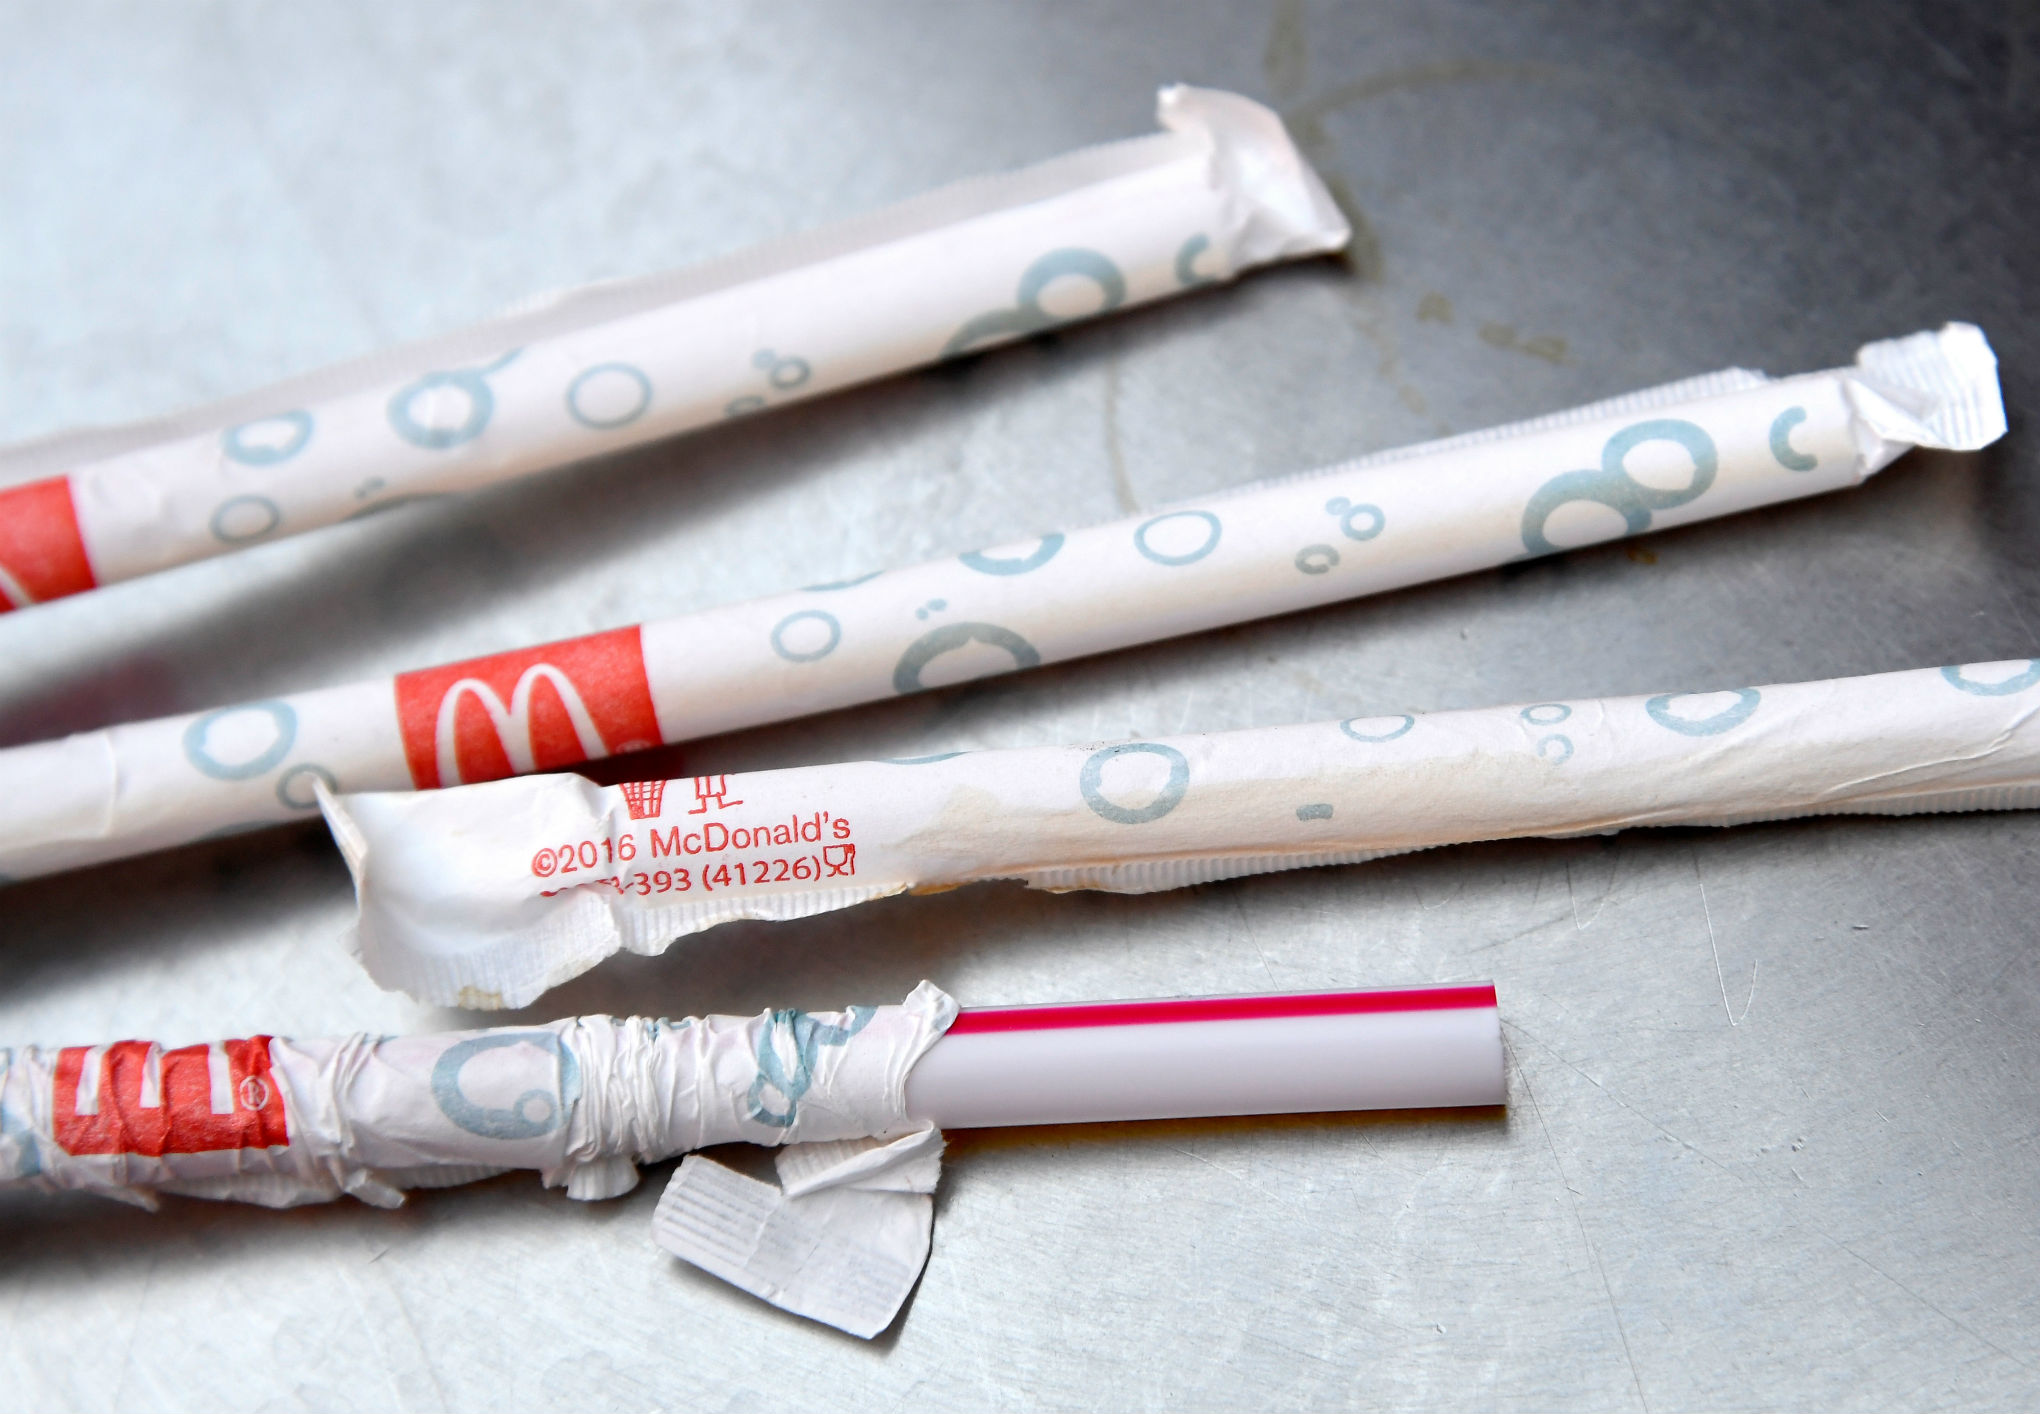 Jouets en plastique, emballages à usage unique: haro sur les déchets des fast foods